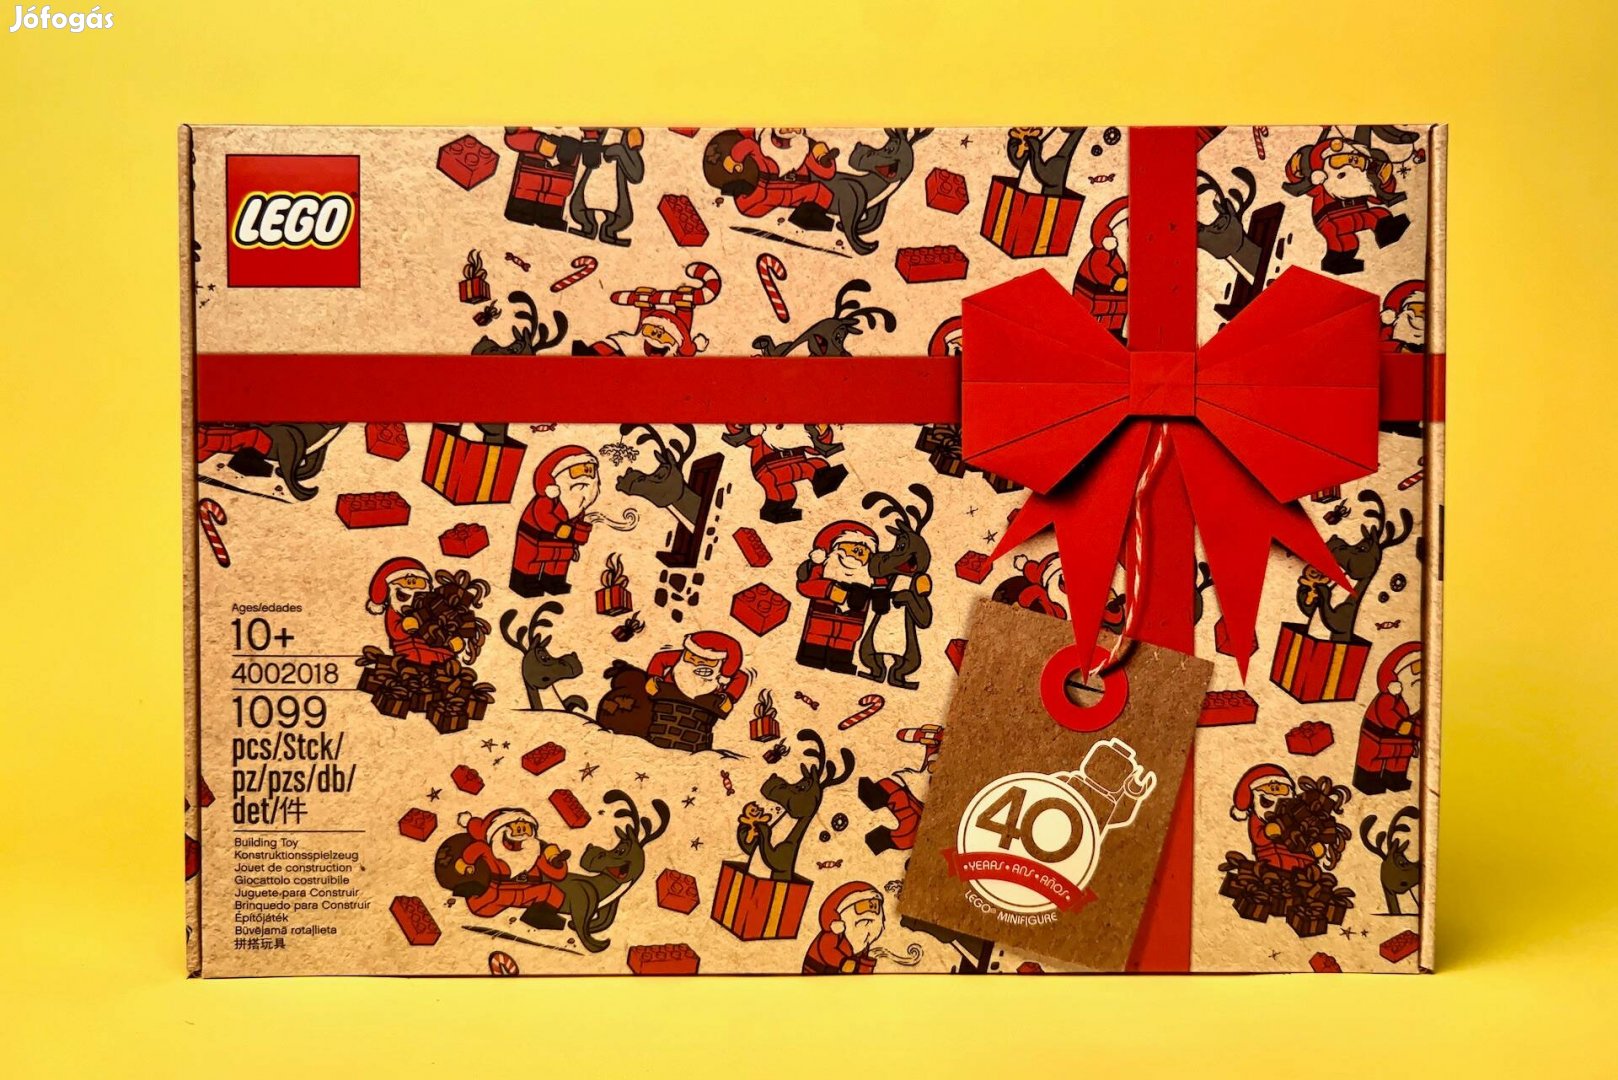 LEGO Miscellaneous 4002018 Employee Christmas Gift, Uj, Bontatlan